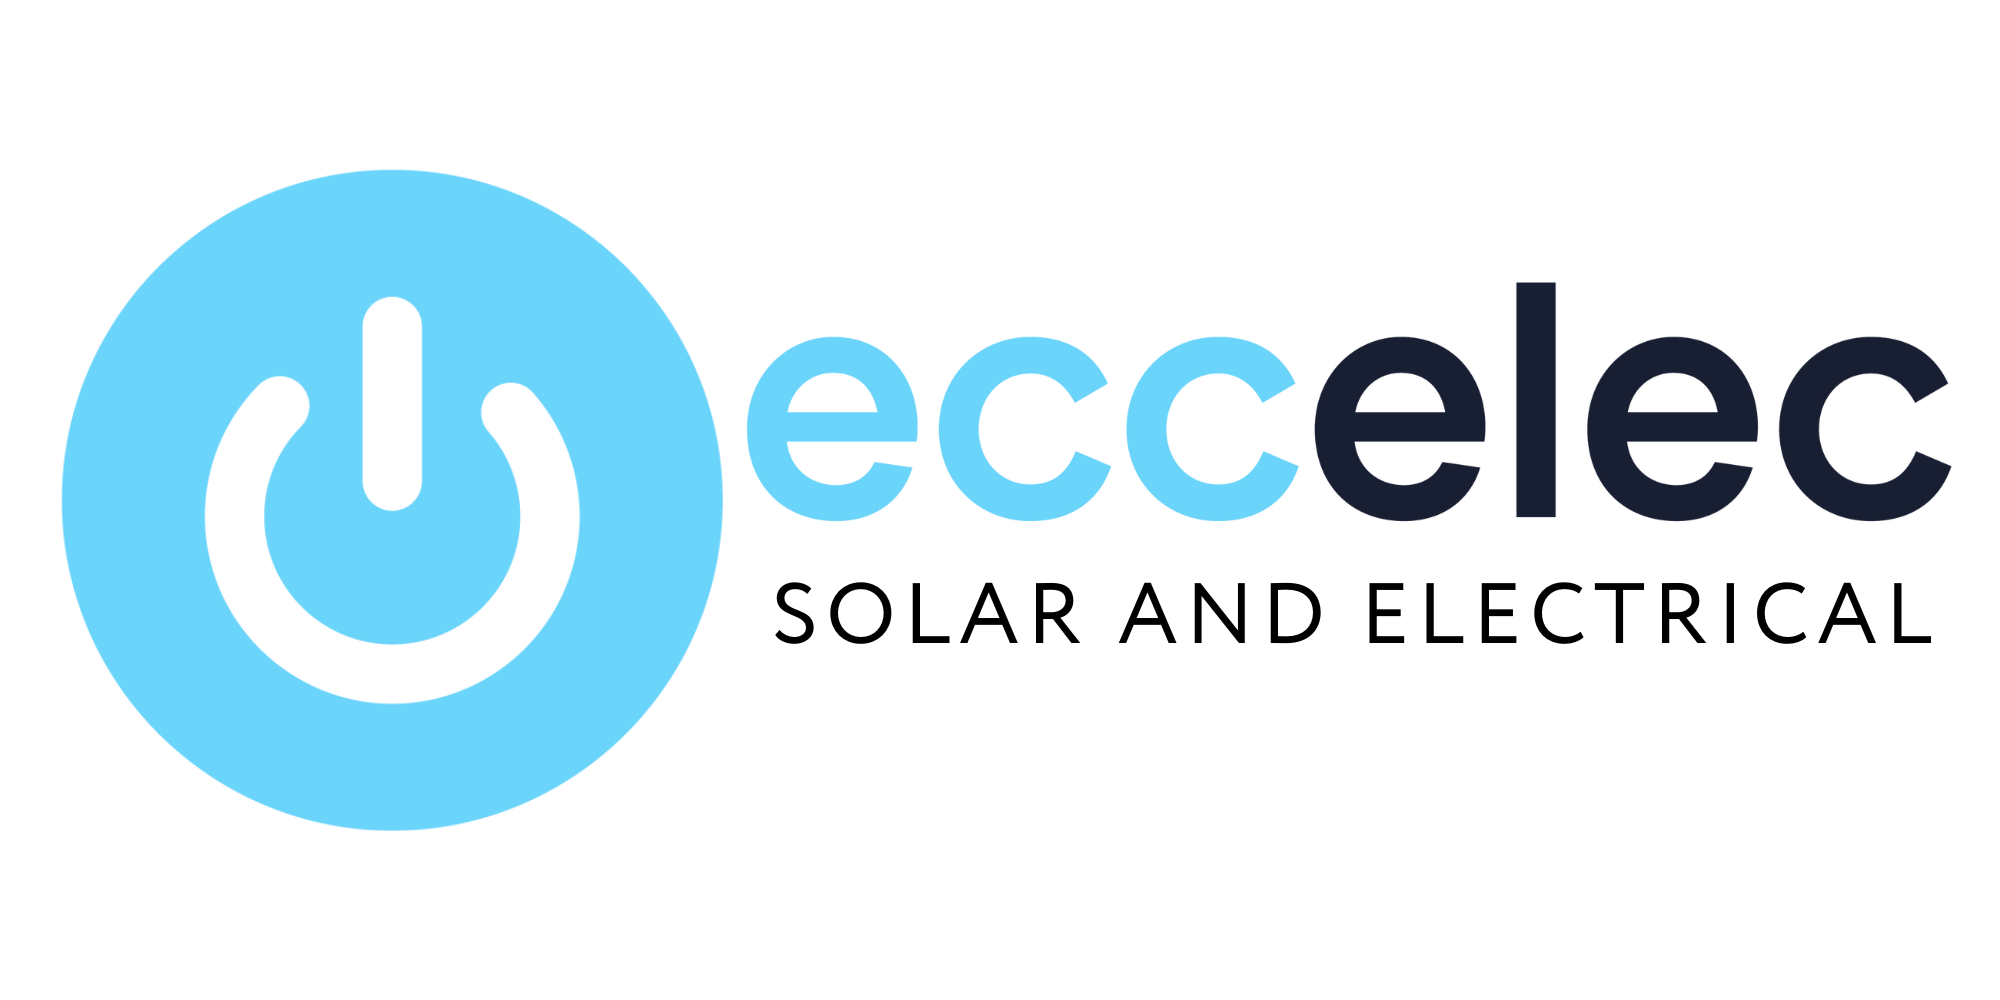 Eccelec Logo - For use on light background.png